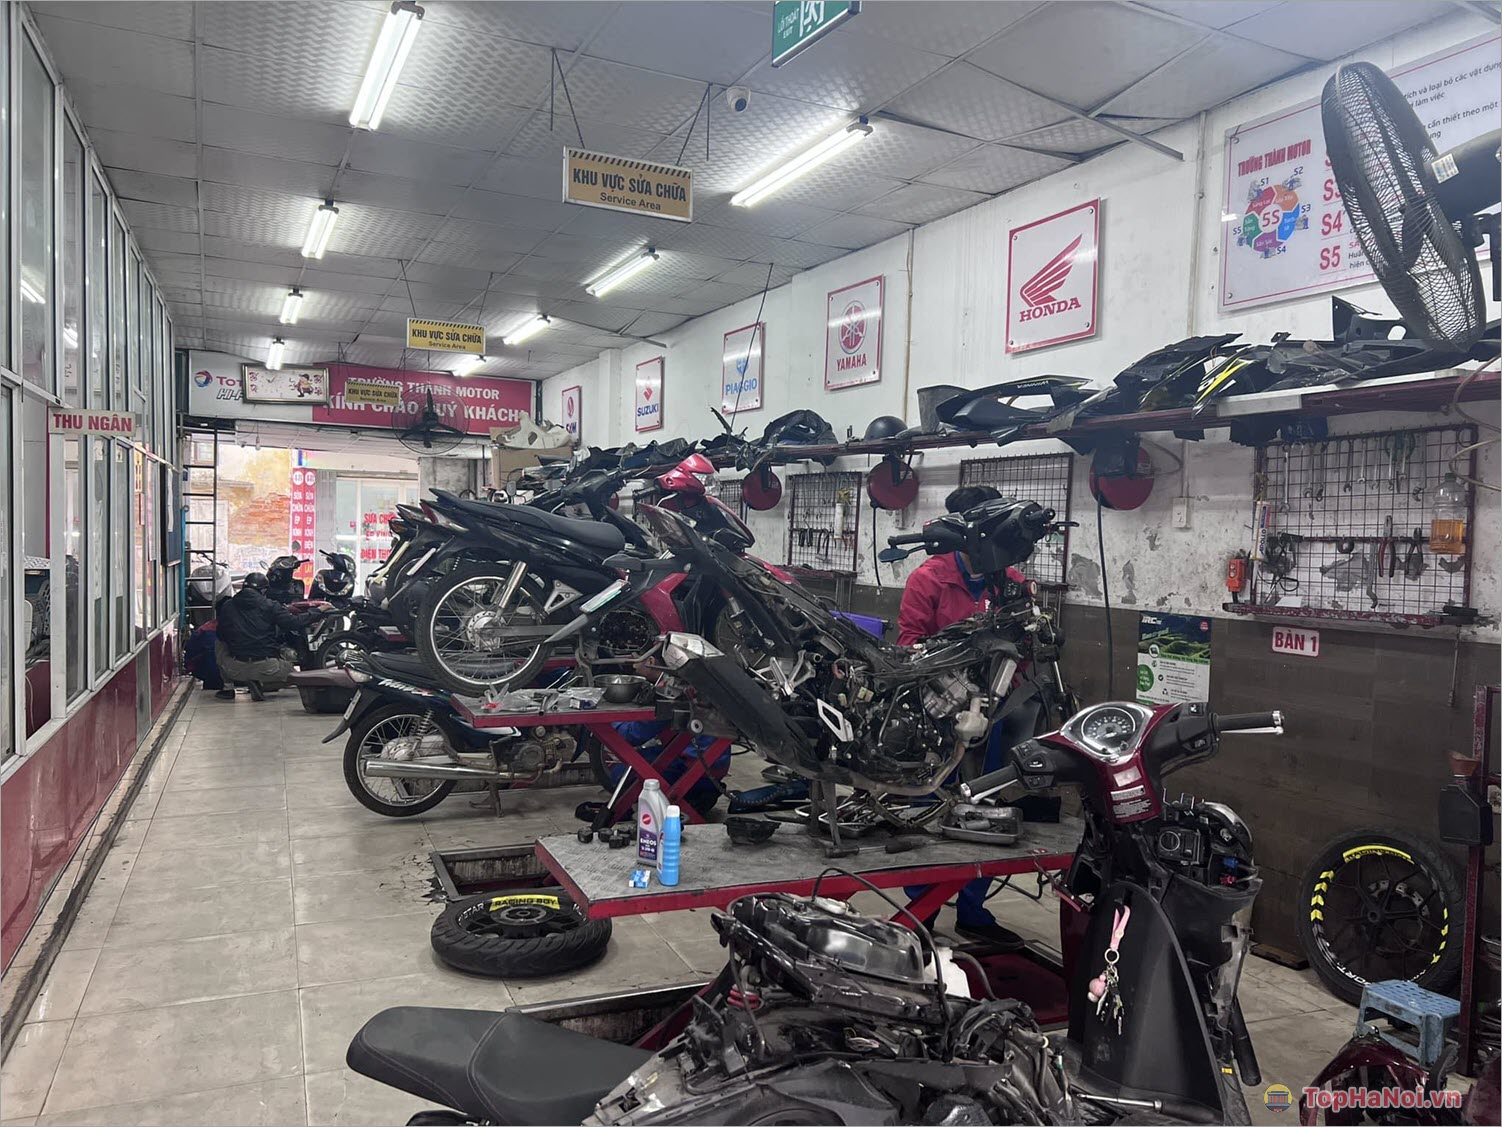 Sửa Xe Trường Thành Motor – Địa điểm sửa xe máy uy tín tại Hà Nội